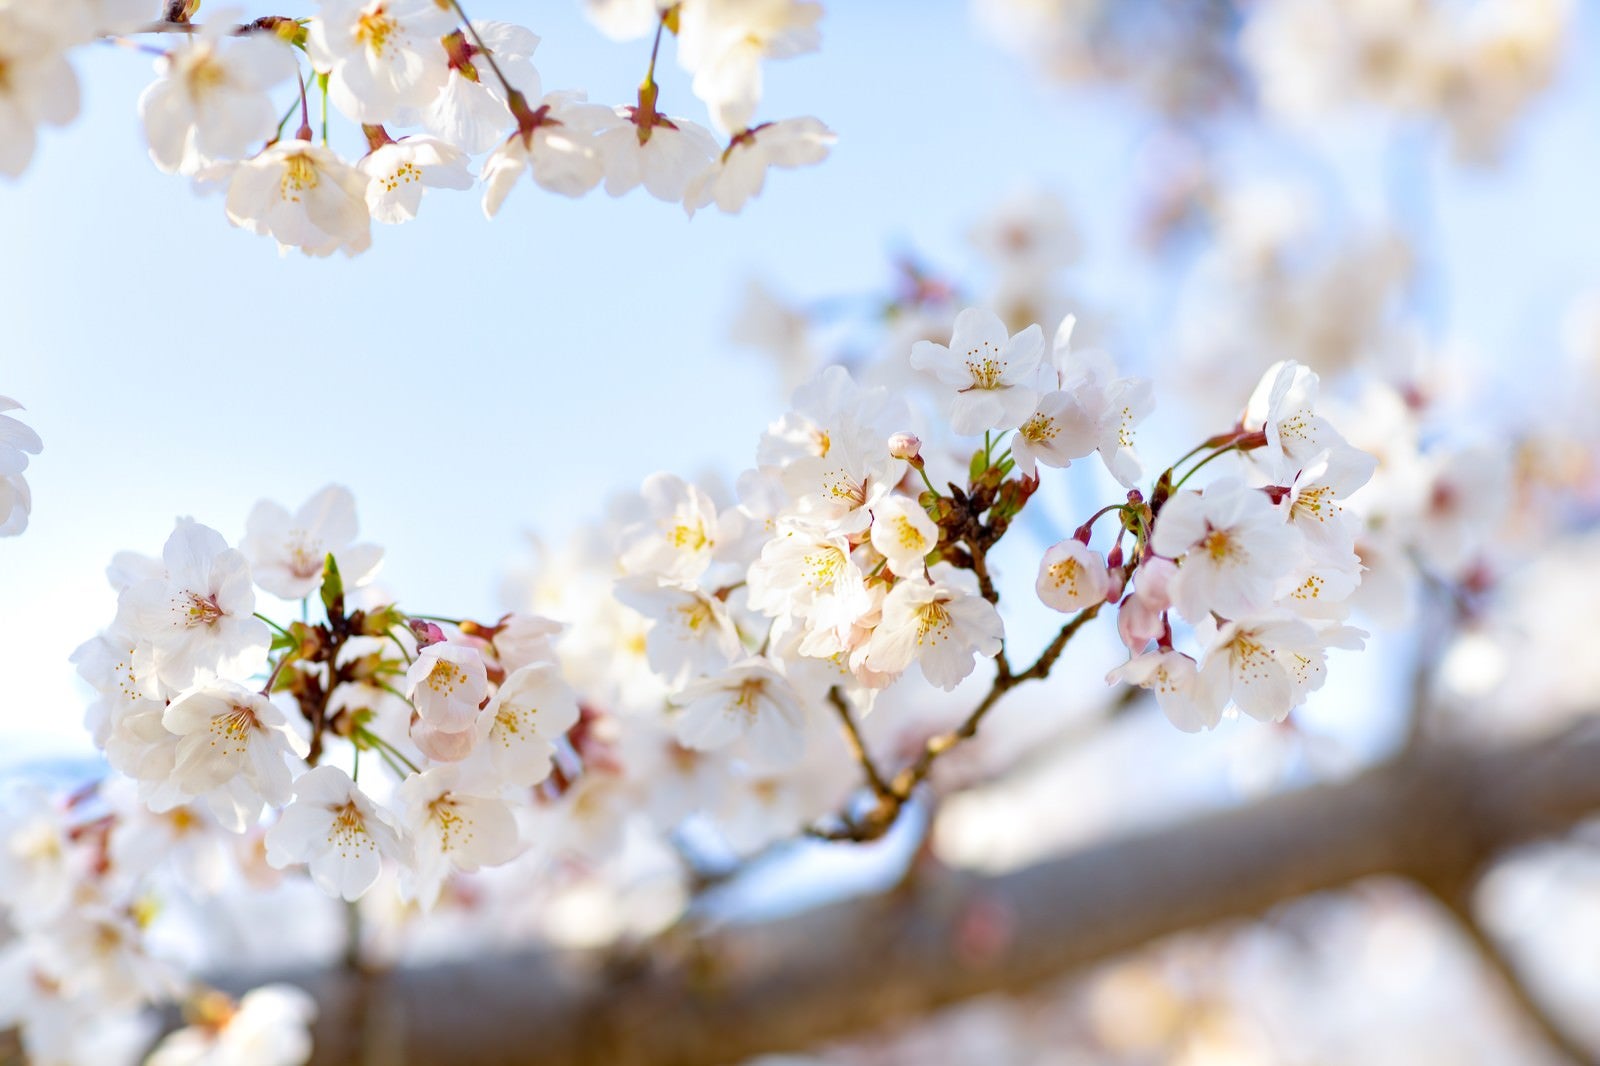 「春の木漏れ日と桜」の写真